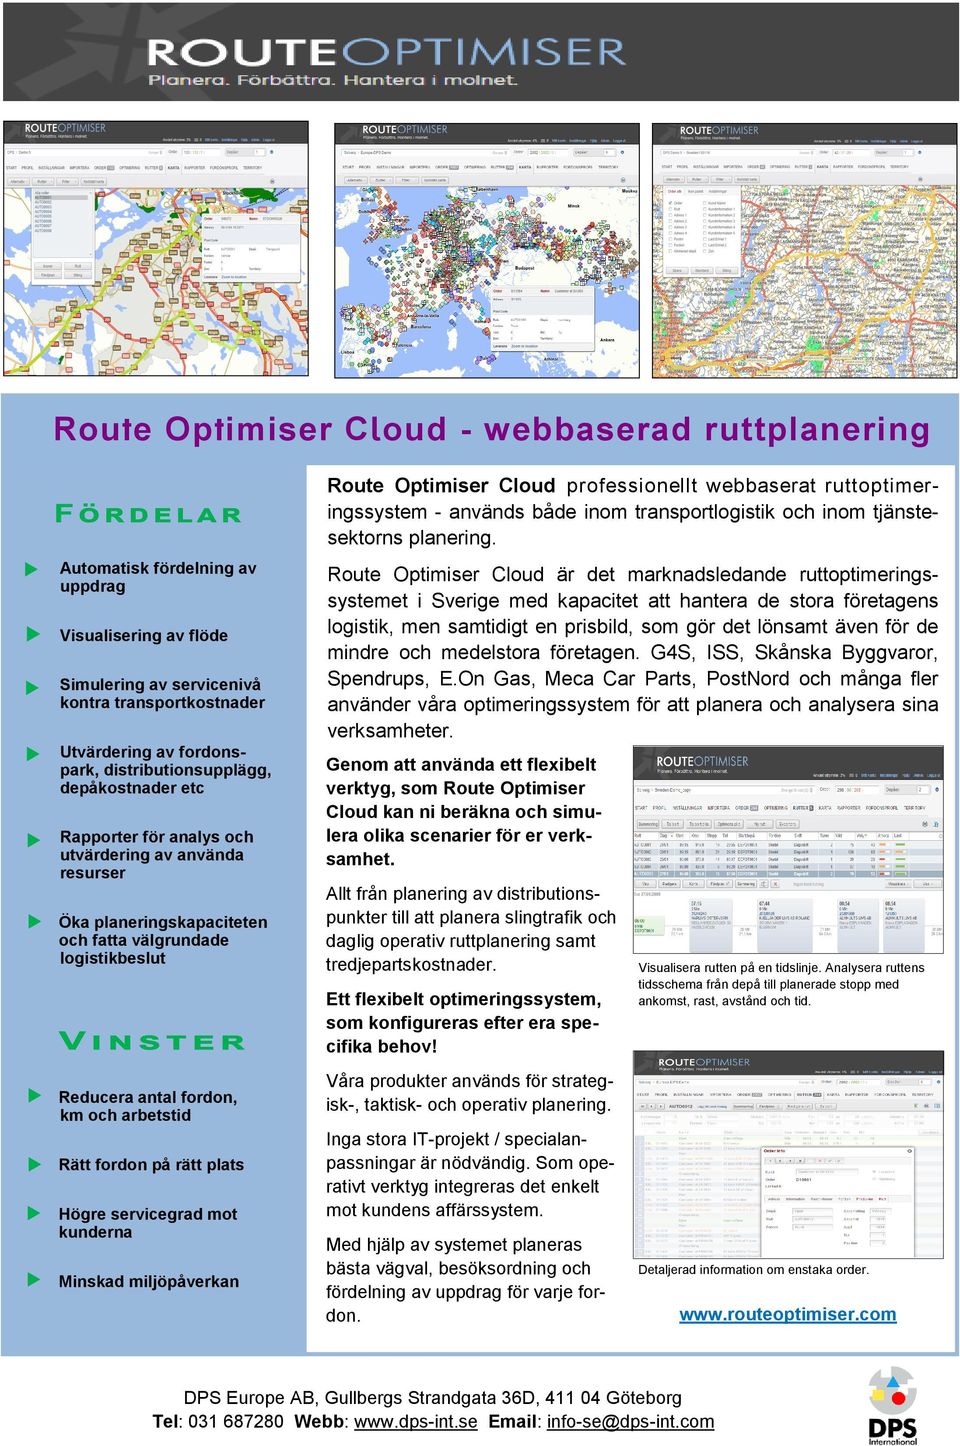 och utvärdering av använda resurser Öka planeringskapaciteten och fatta välgrundade logistikbeslut Route Optimiser Cloud är det marknadsledande ruttoptimeringssystemet i Sverige med kapacitet att